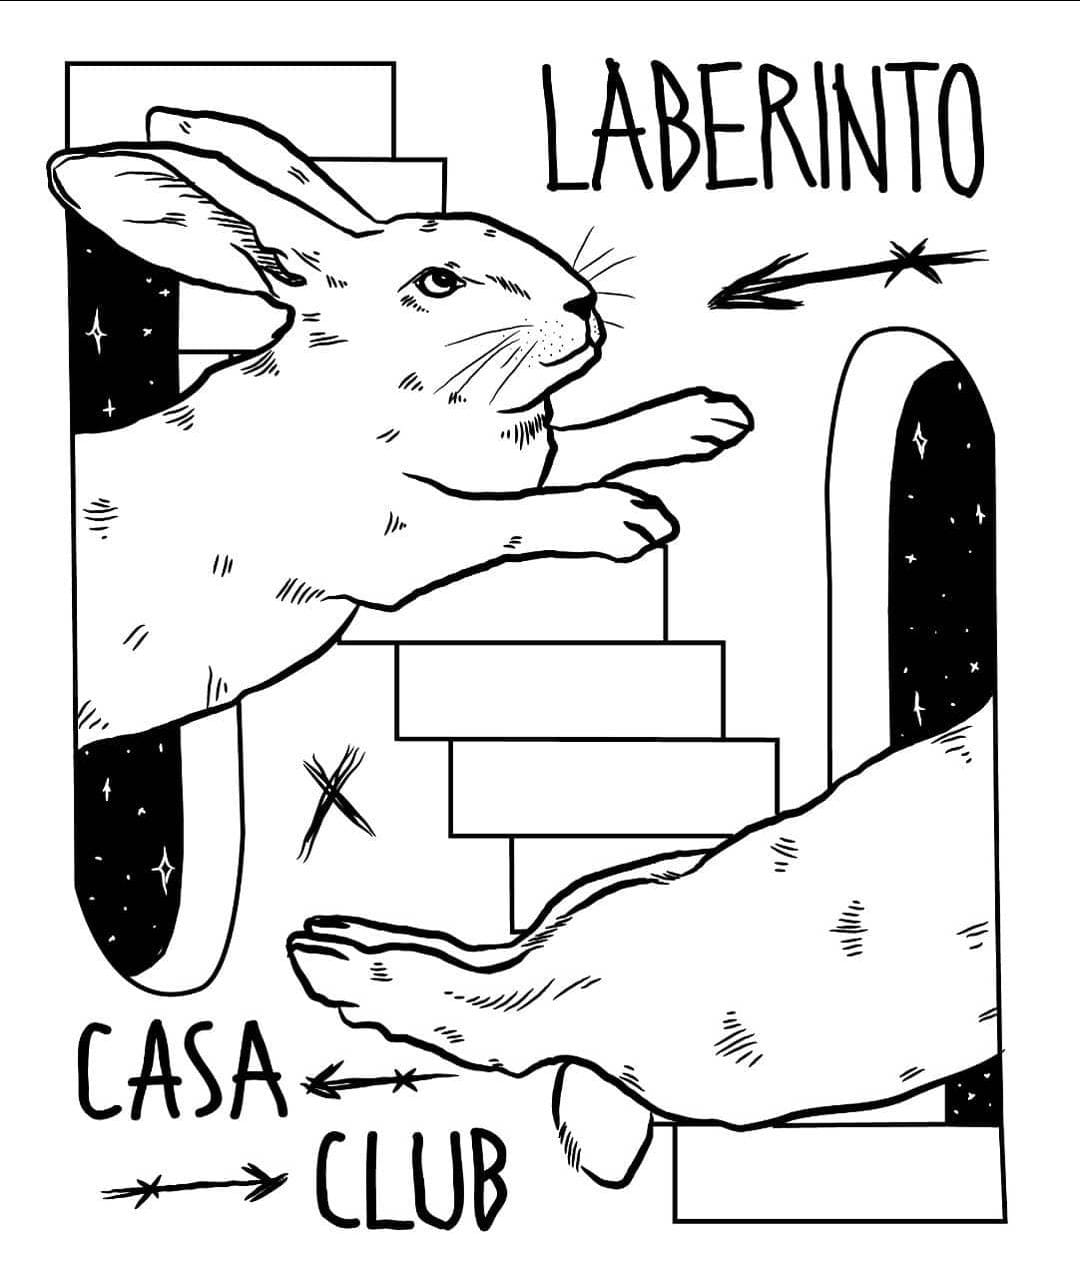 File:Logo Laberinto Casa Club.jpeg